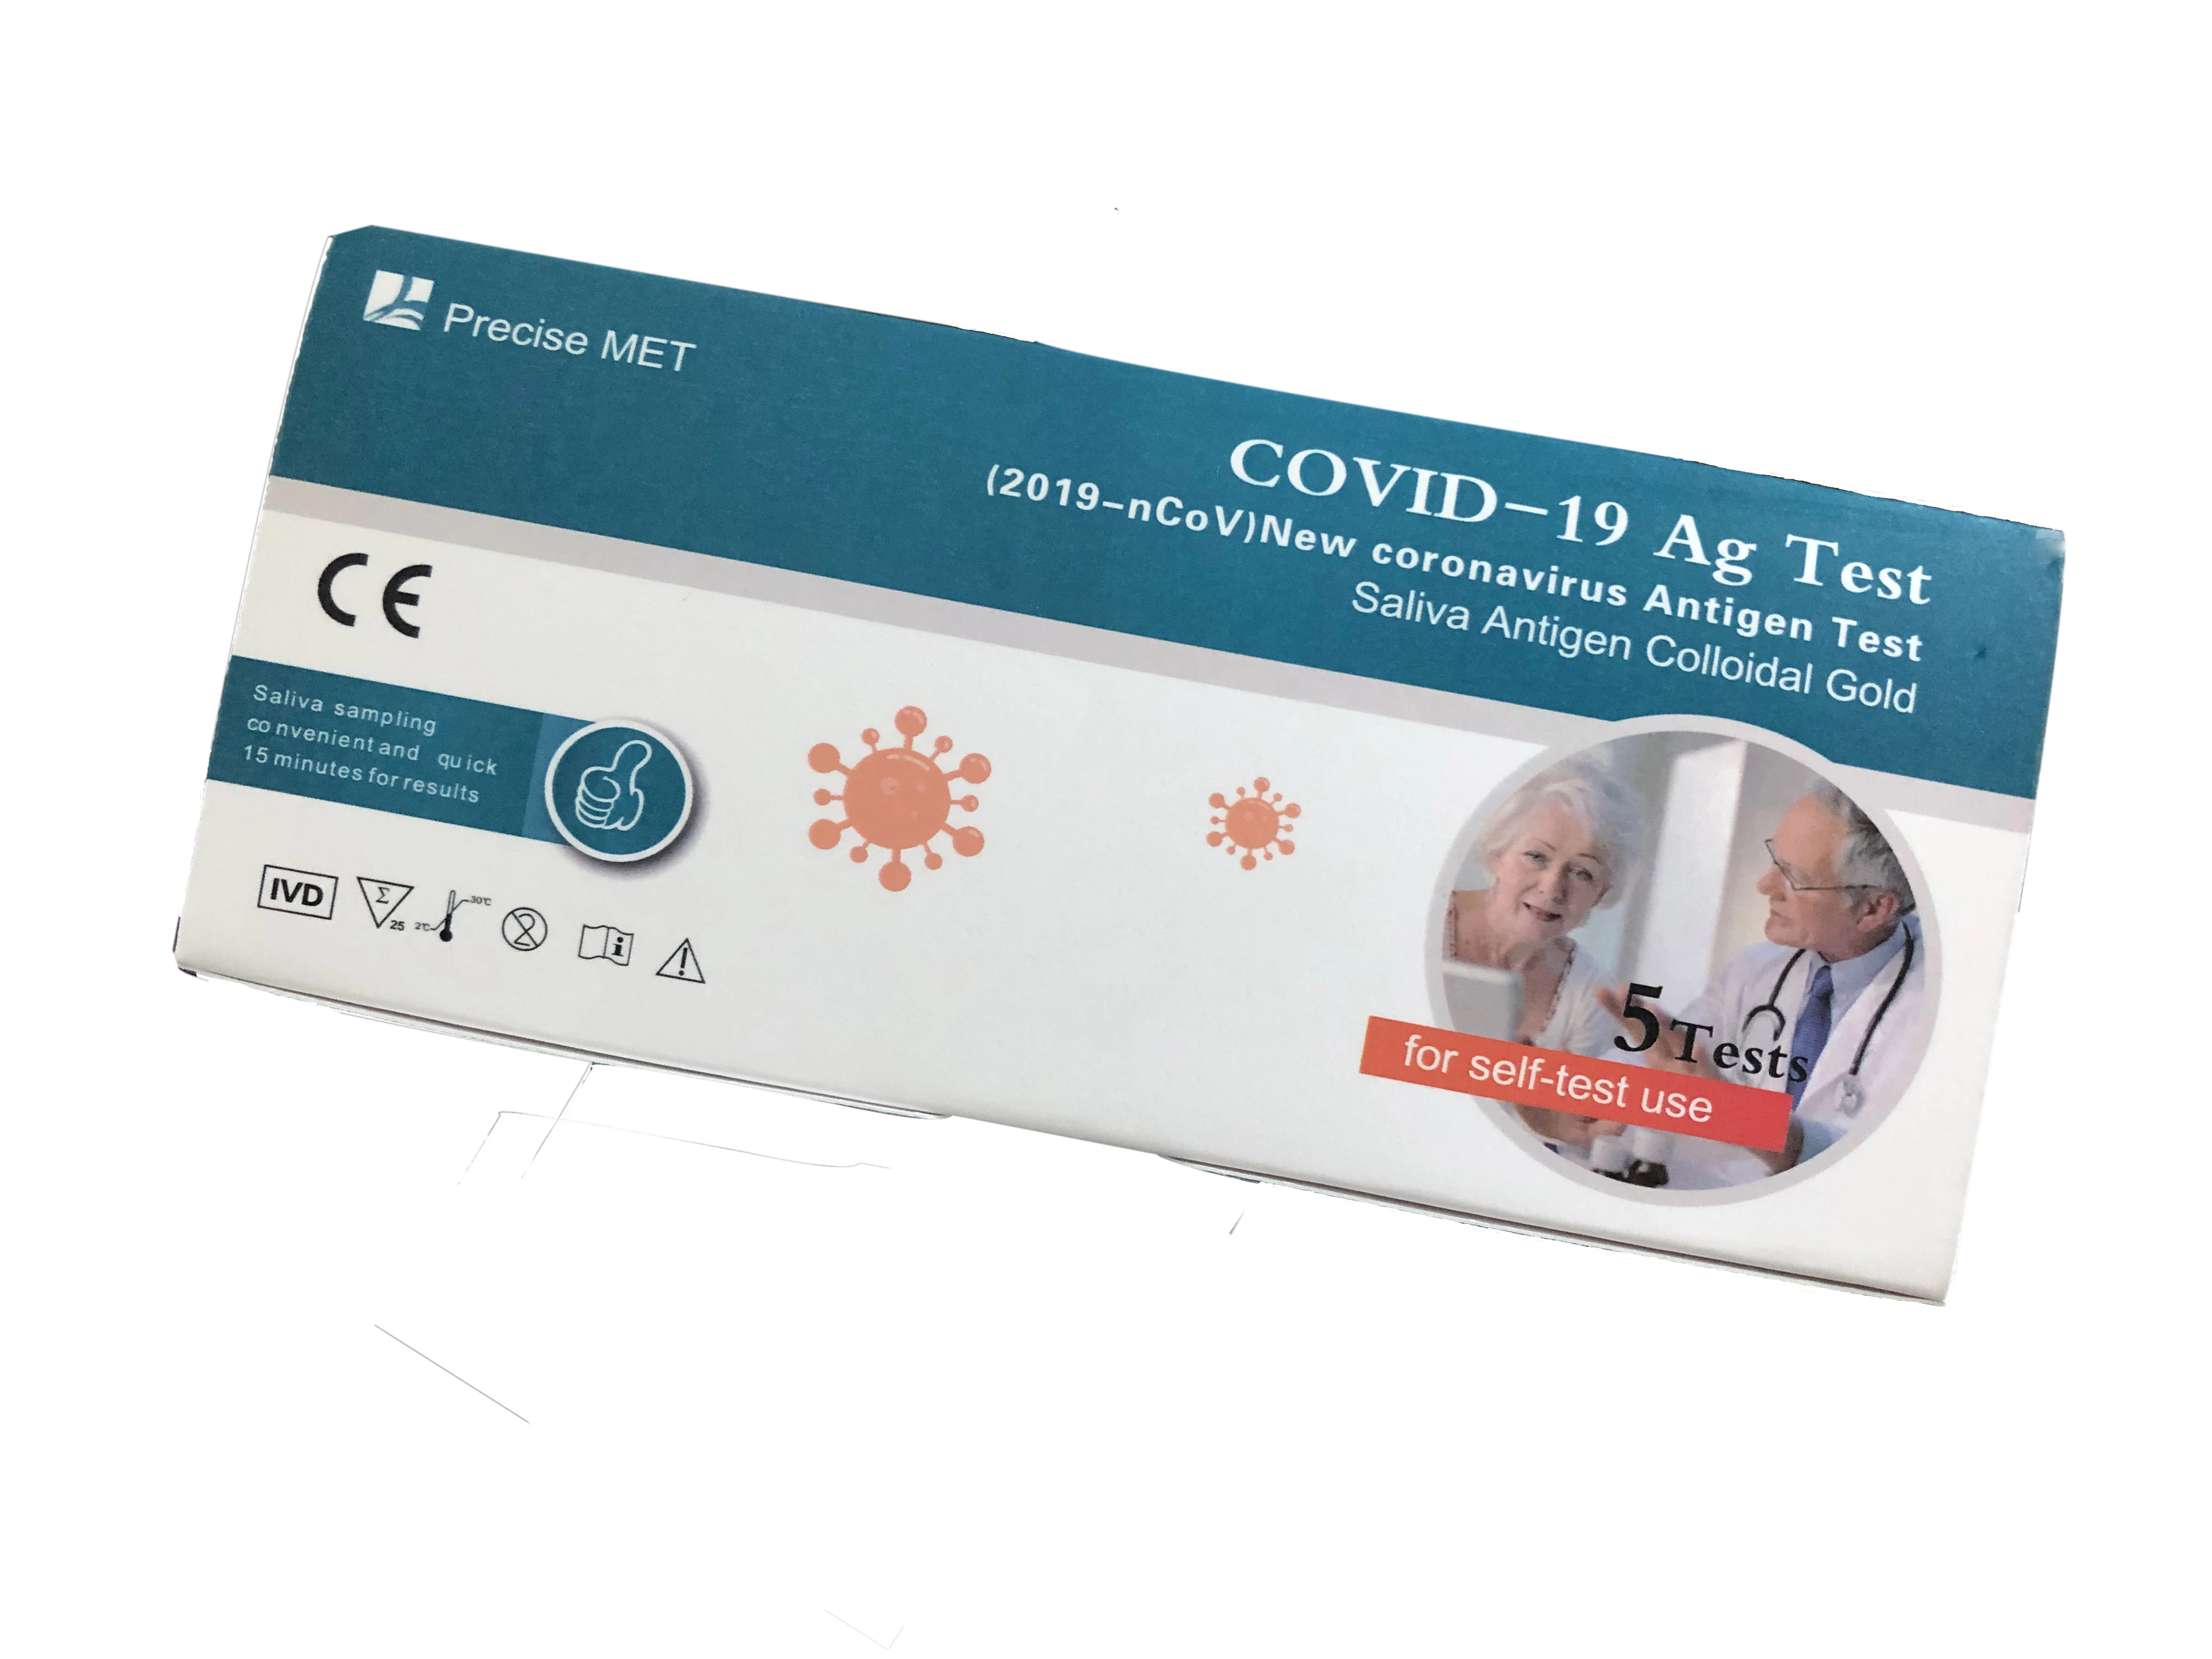 10 test/Tükürük Antijen Testi (Kolloidal Altın)